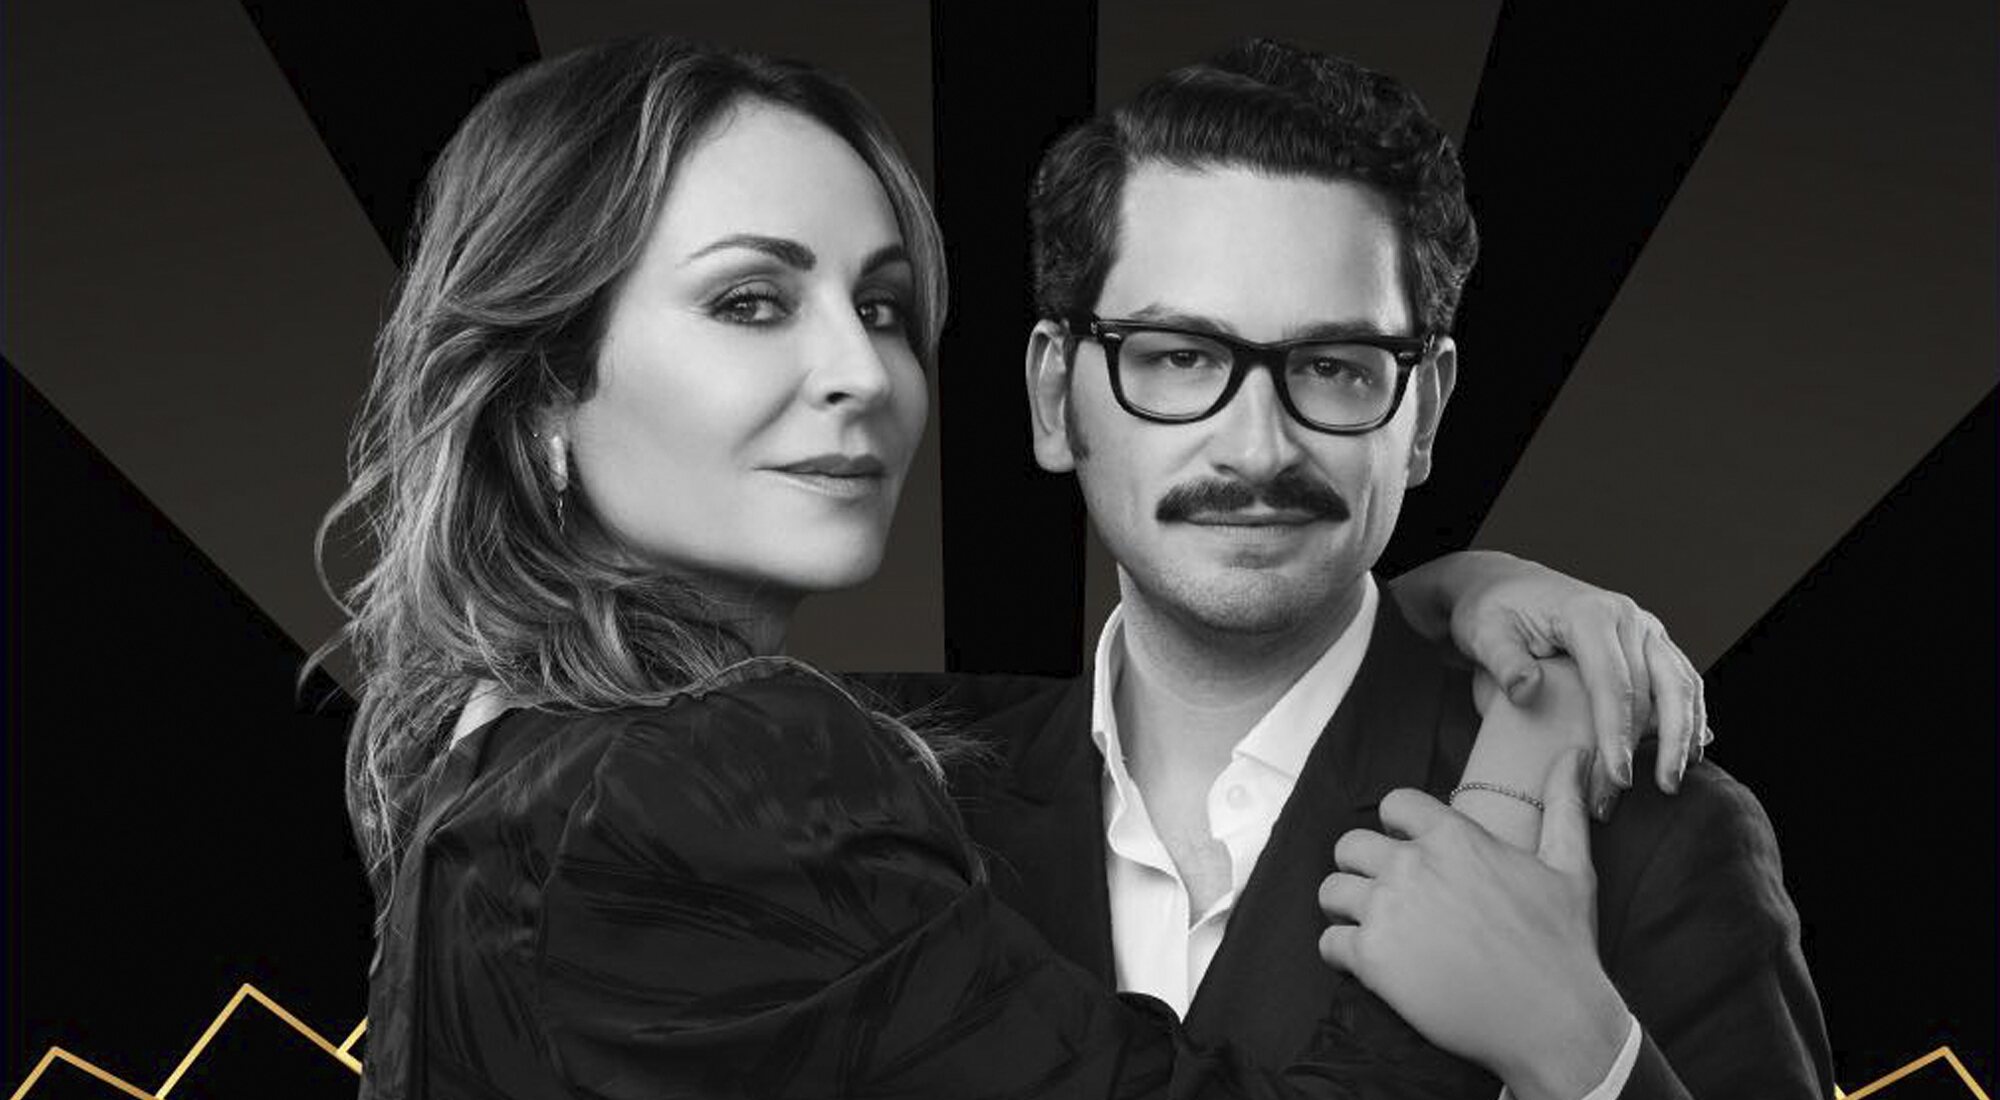 Ana Milán y Sebastián Gallego en la portada de su podcast "La vida y tal"